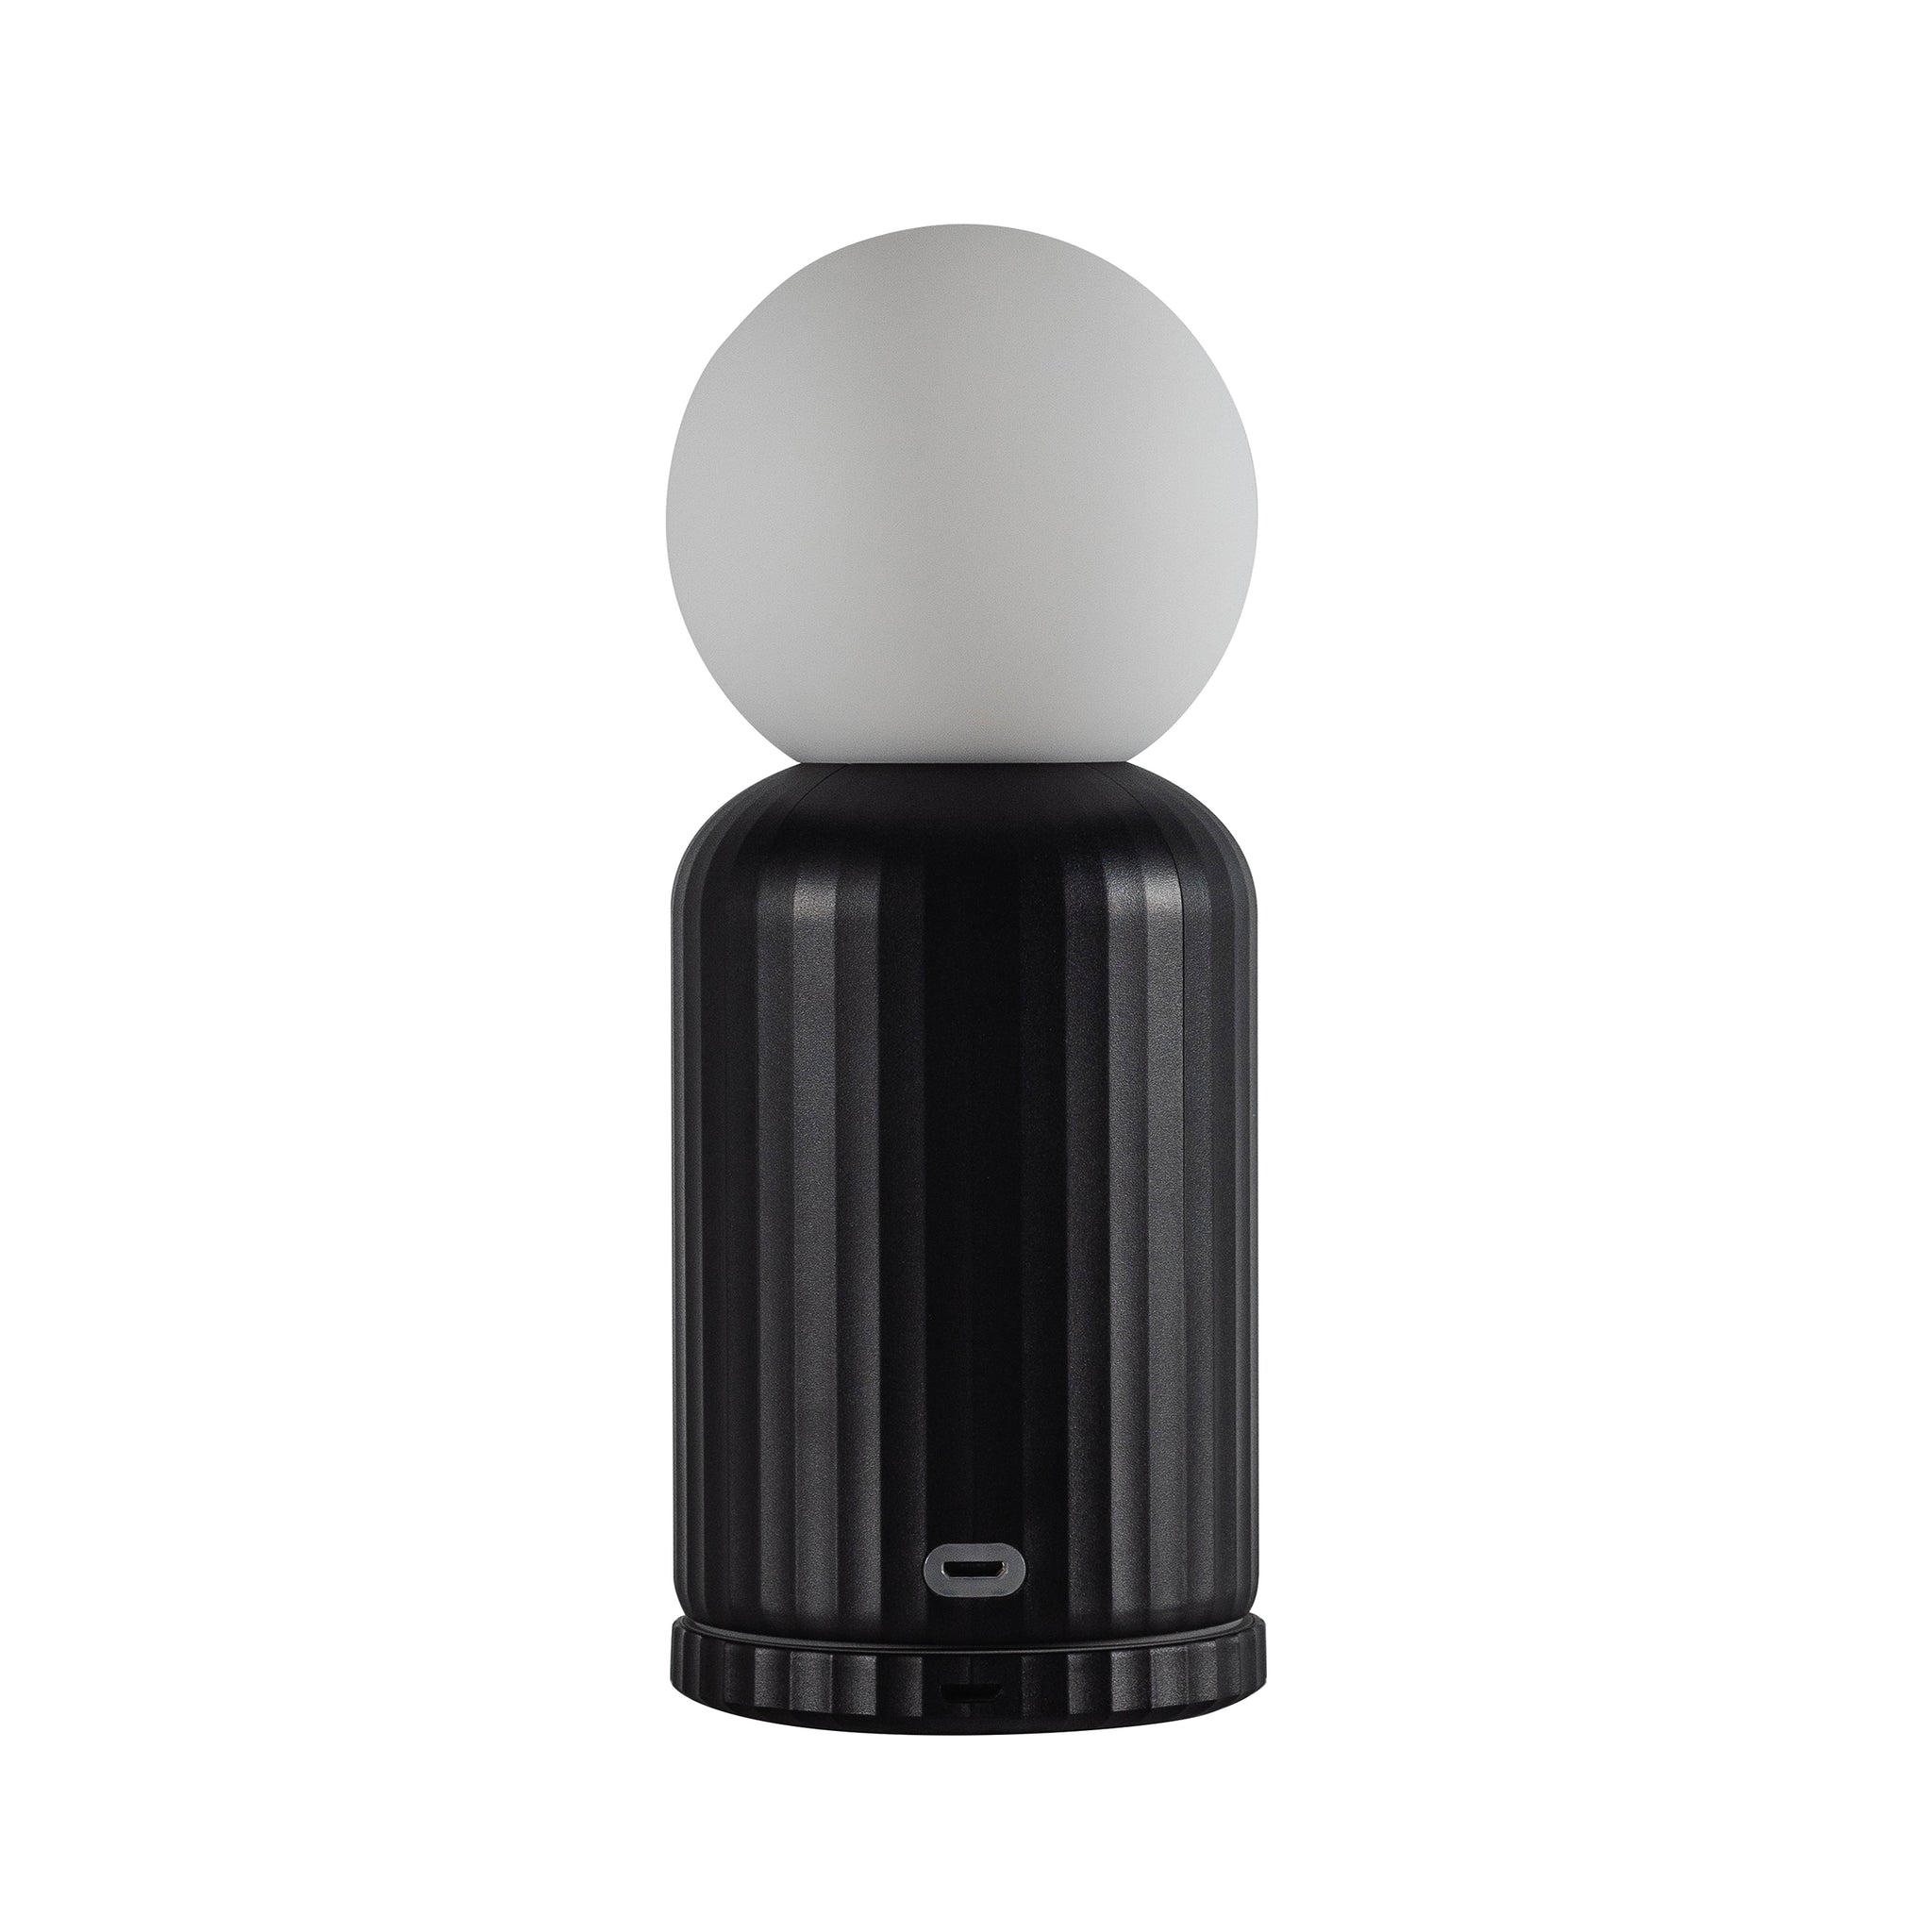 Skittle Oplaadbare Lamp Zwart│Lund London│Draadloos│foto witte achtergrond met USB-poort aan voorzijde